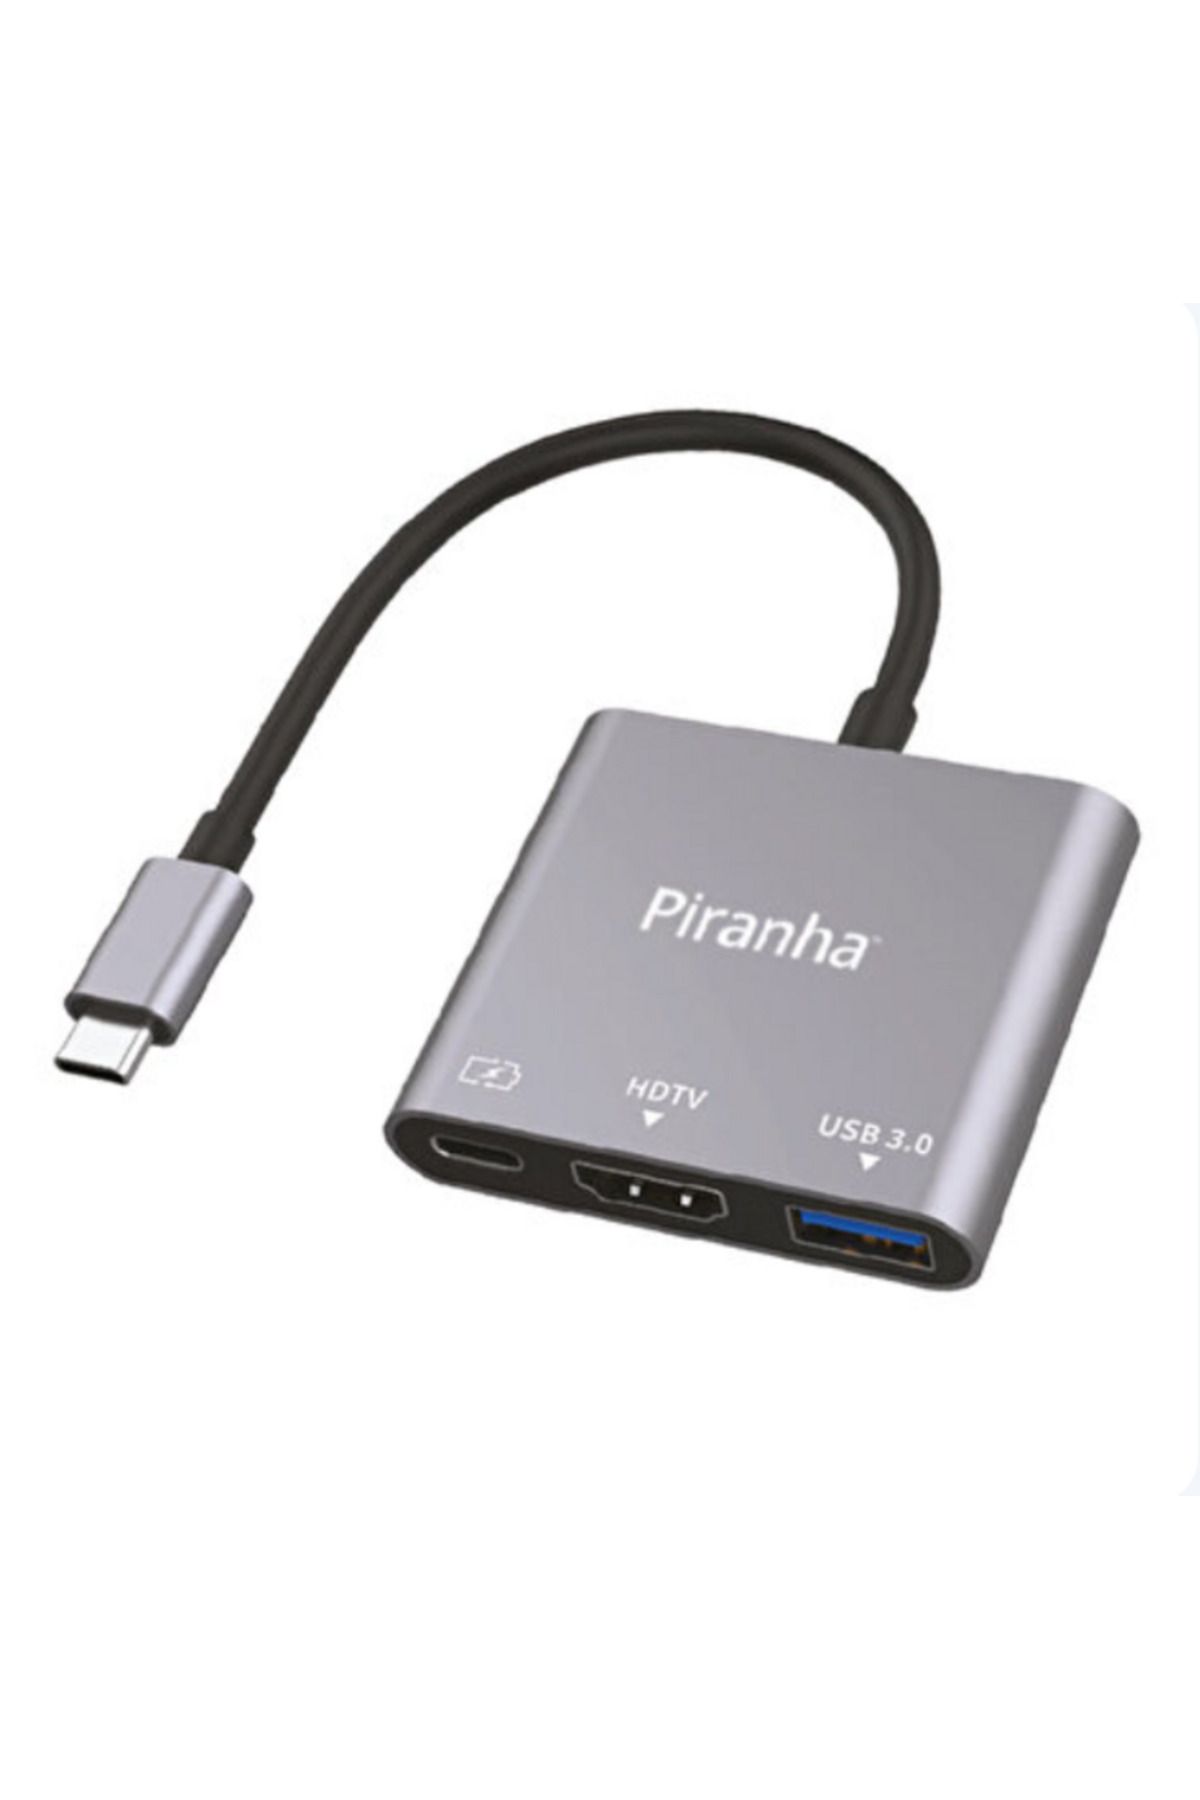 Piranha 3395 3in1 Çevirici Adaptör Type-C to HDMI, USB 3.0, Type-C Mac Uyumlu 4K Yüksek Hızlı Adaptör